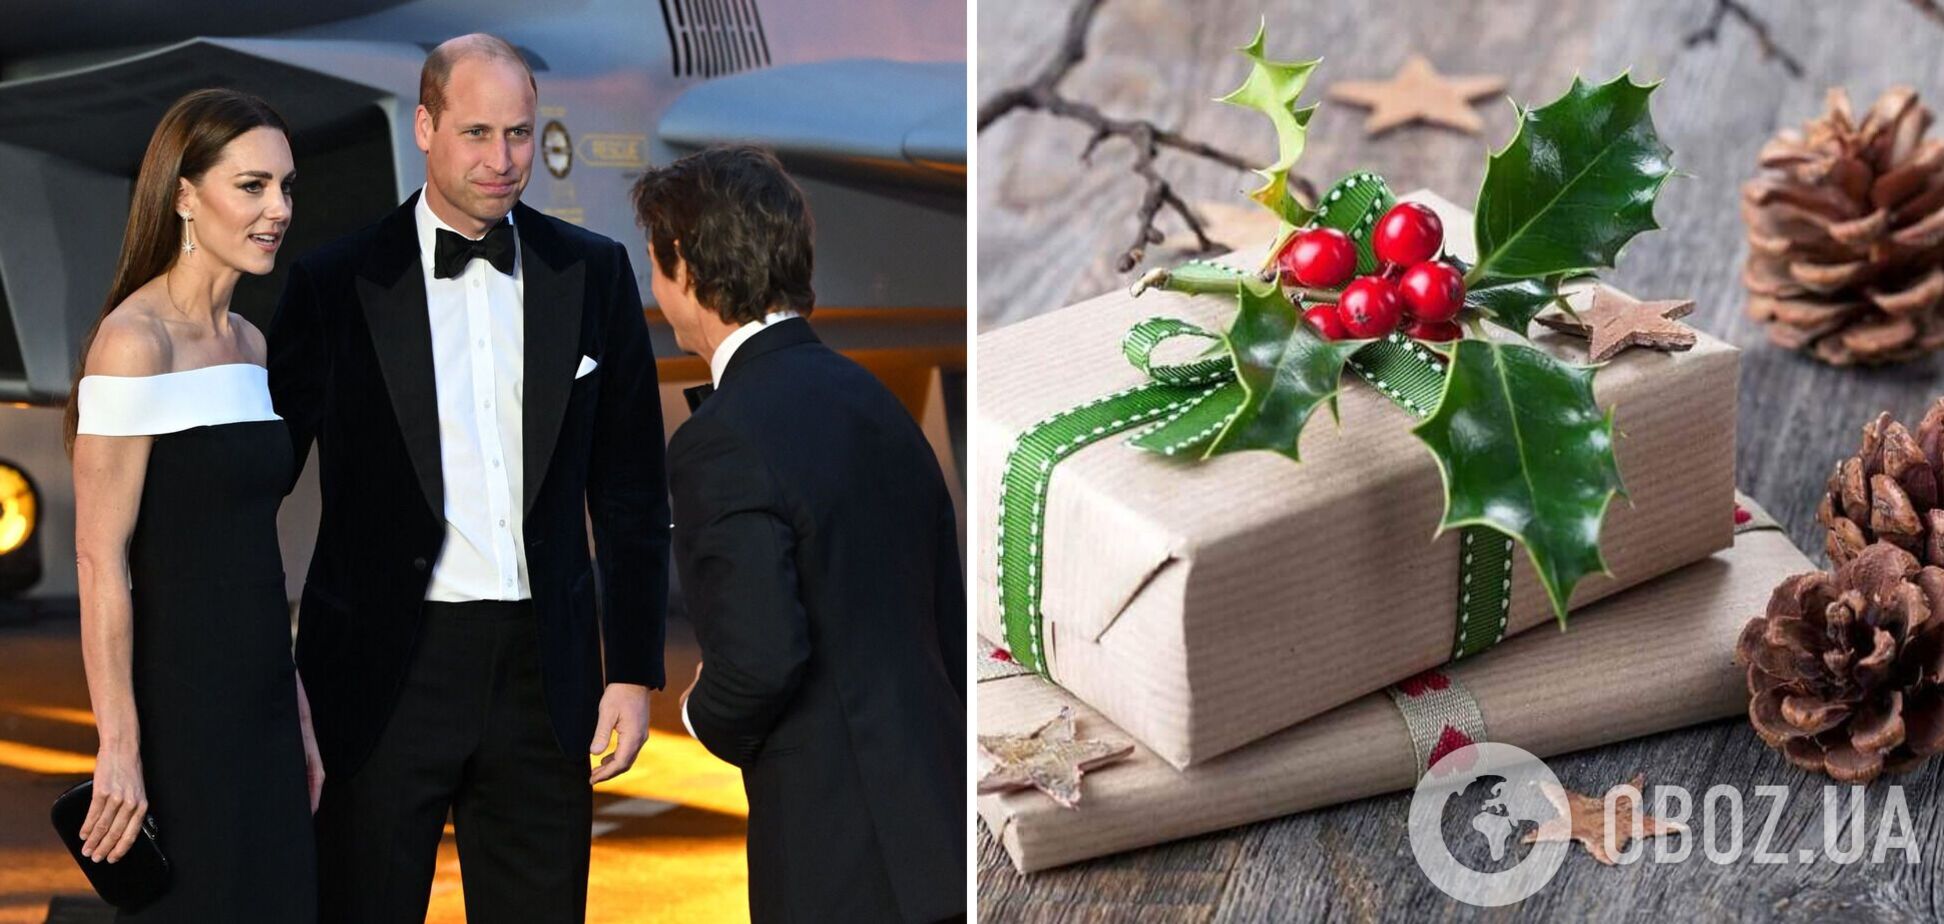 Том Круз частным самолетом послал рождественский подарок Кейт Миддлтон и принцу Уильяму: что получили герцоги